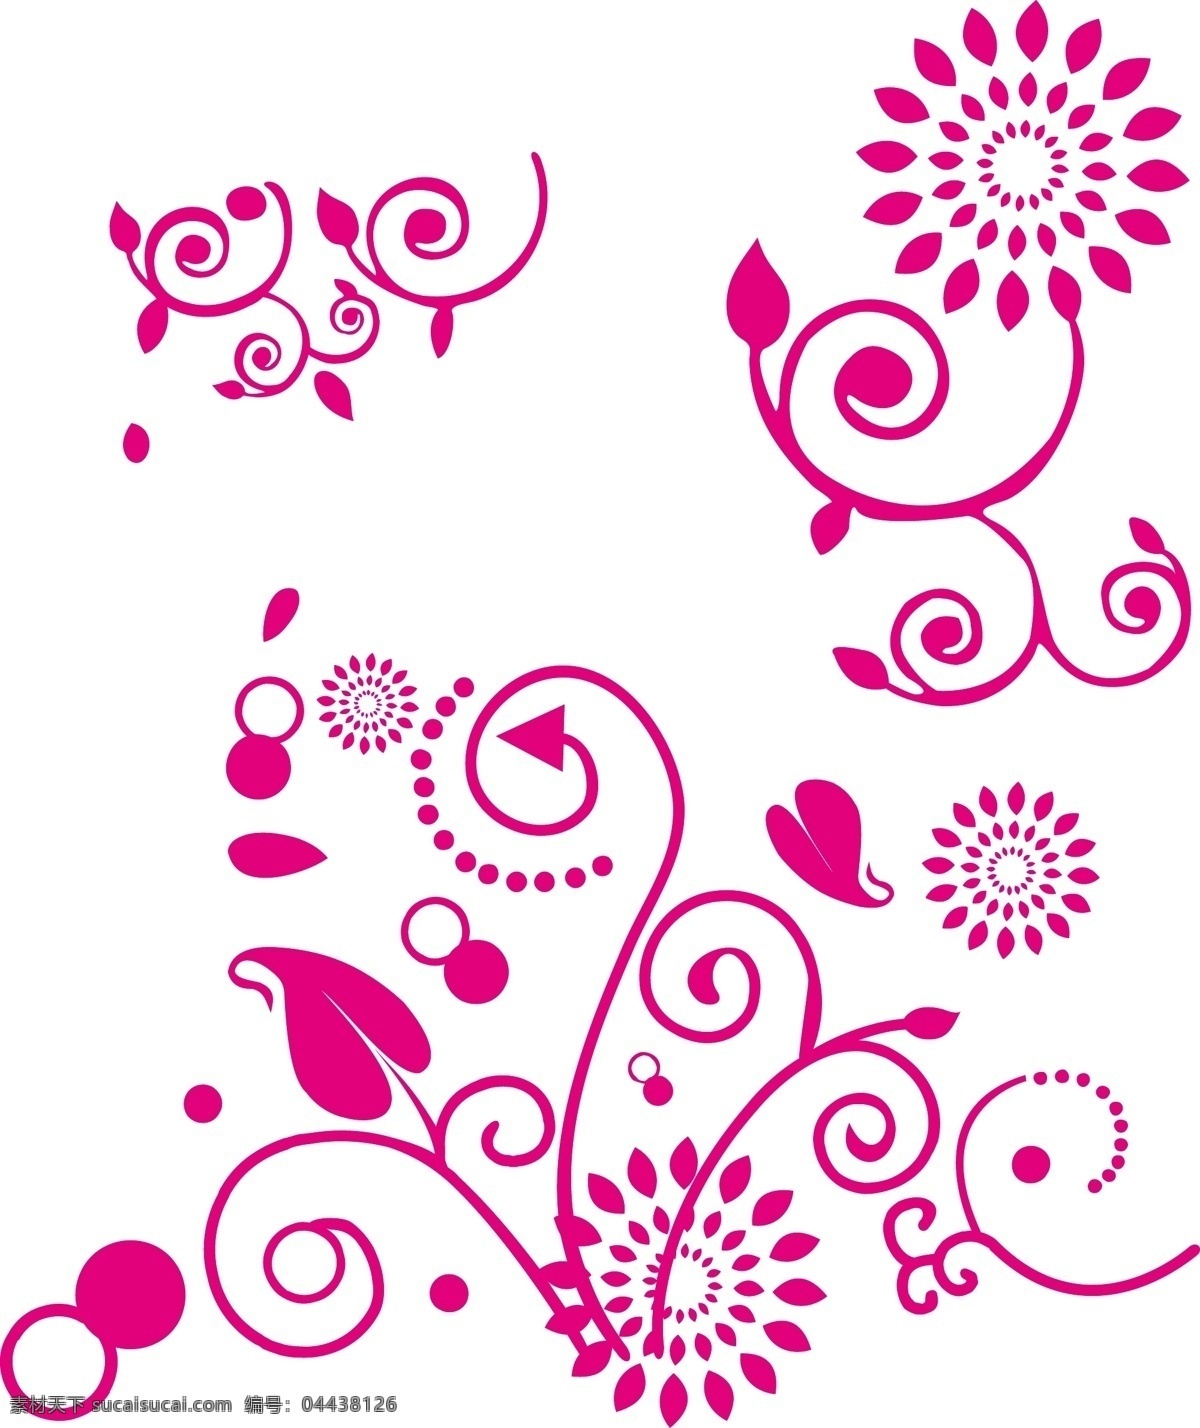 手绘 花朵 矢量图 手绘花朵 花朵eps图 手绘花 花朵矢量图 单色 雕刻 底纹边框 背景底纹